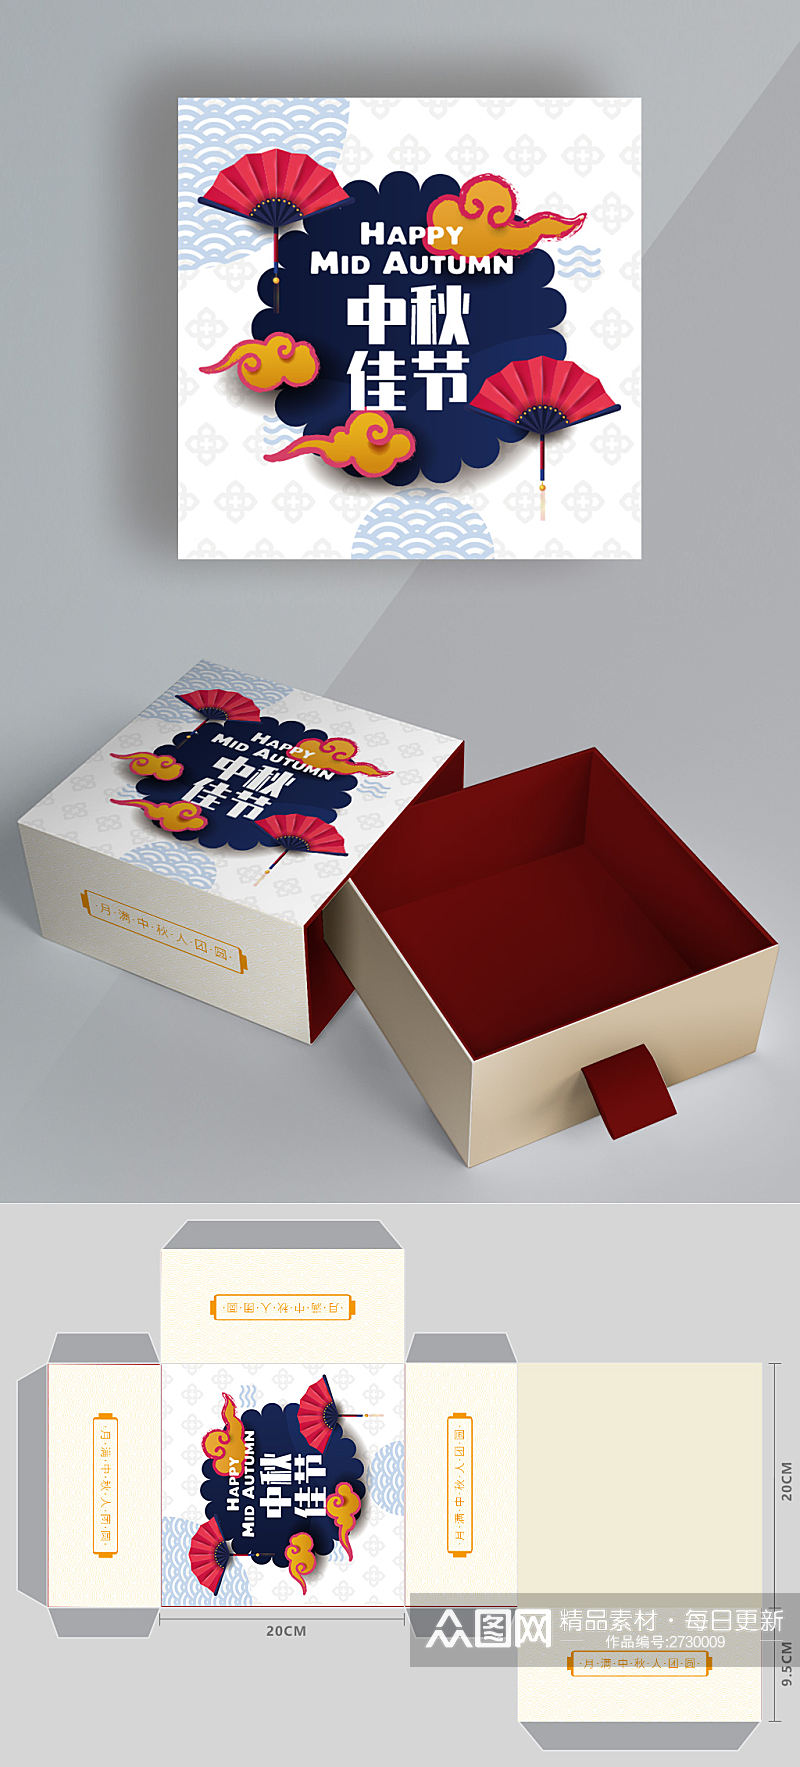 矢量中式底纹中秋节月饼礼盒包装设计素材